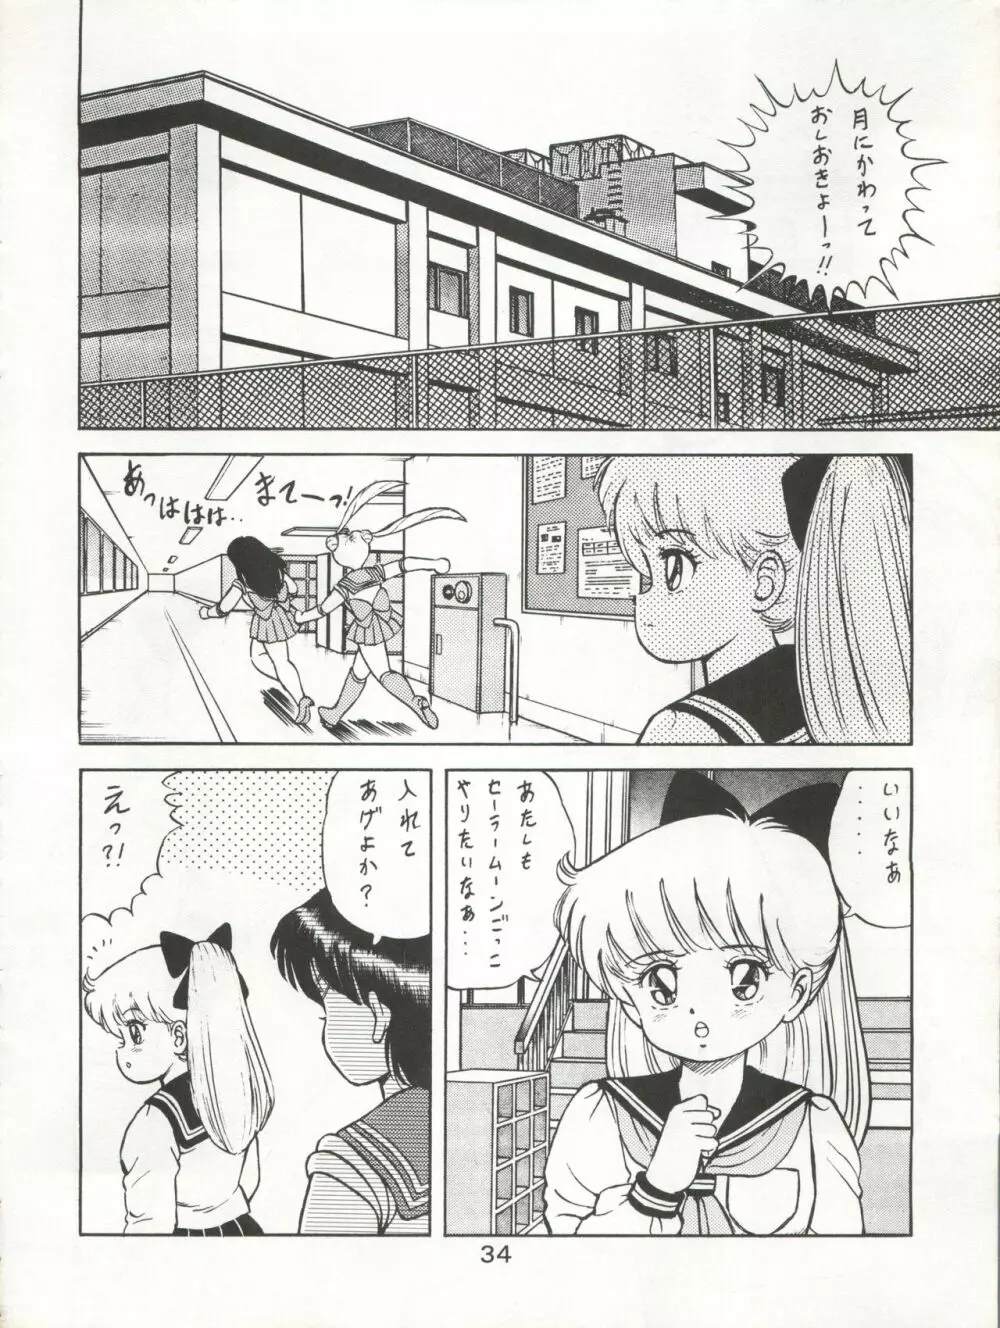 KATZE 7 上巻 - page35